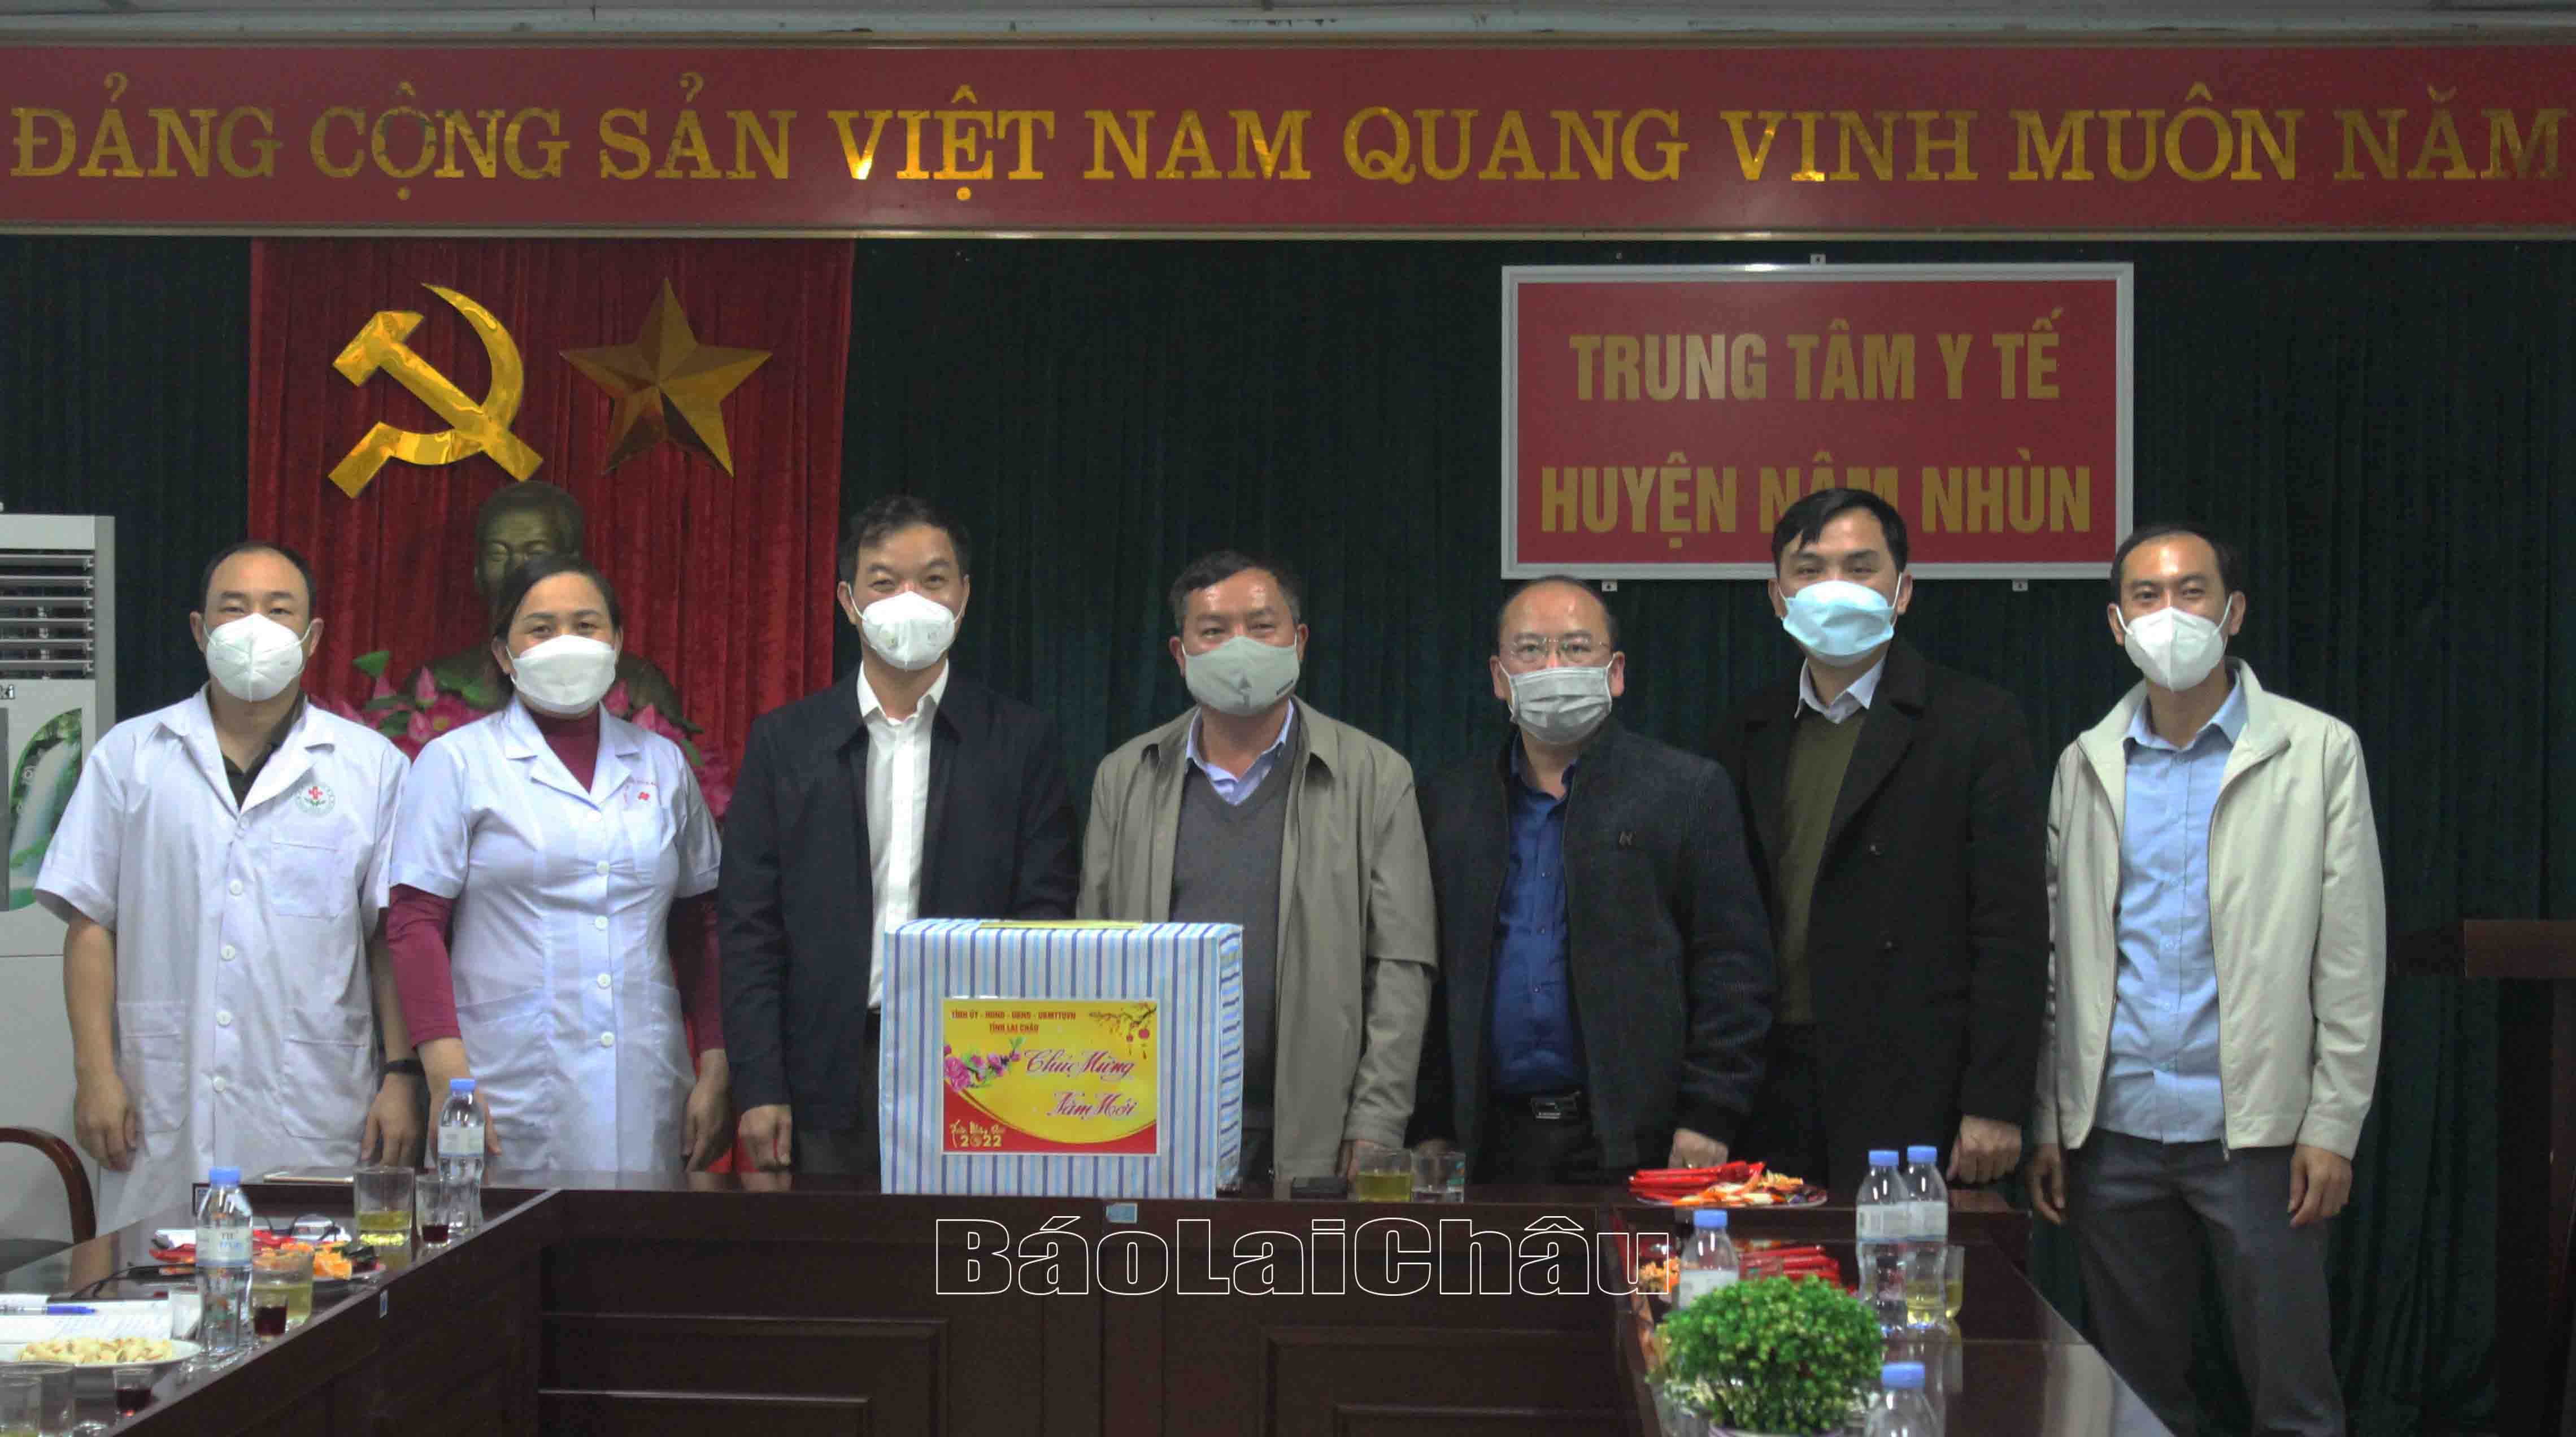 Đồng chí Giàng A Tính – Ủy viên Ban Thường vụ Tỉnh ủy, Phó Chủ tịch UBND tỉnh cùng Đoàn công tác tặng quà Trung tâm Y tế huyện Nậm Nhùn.